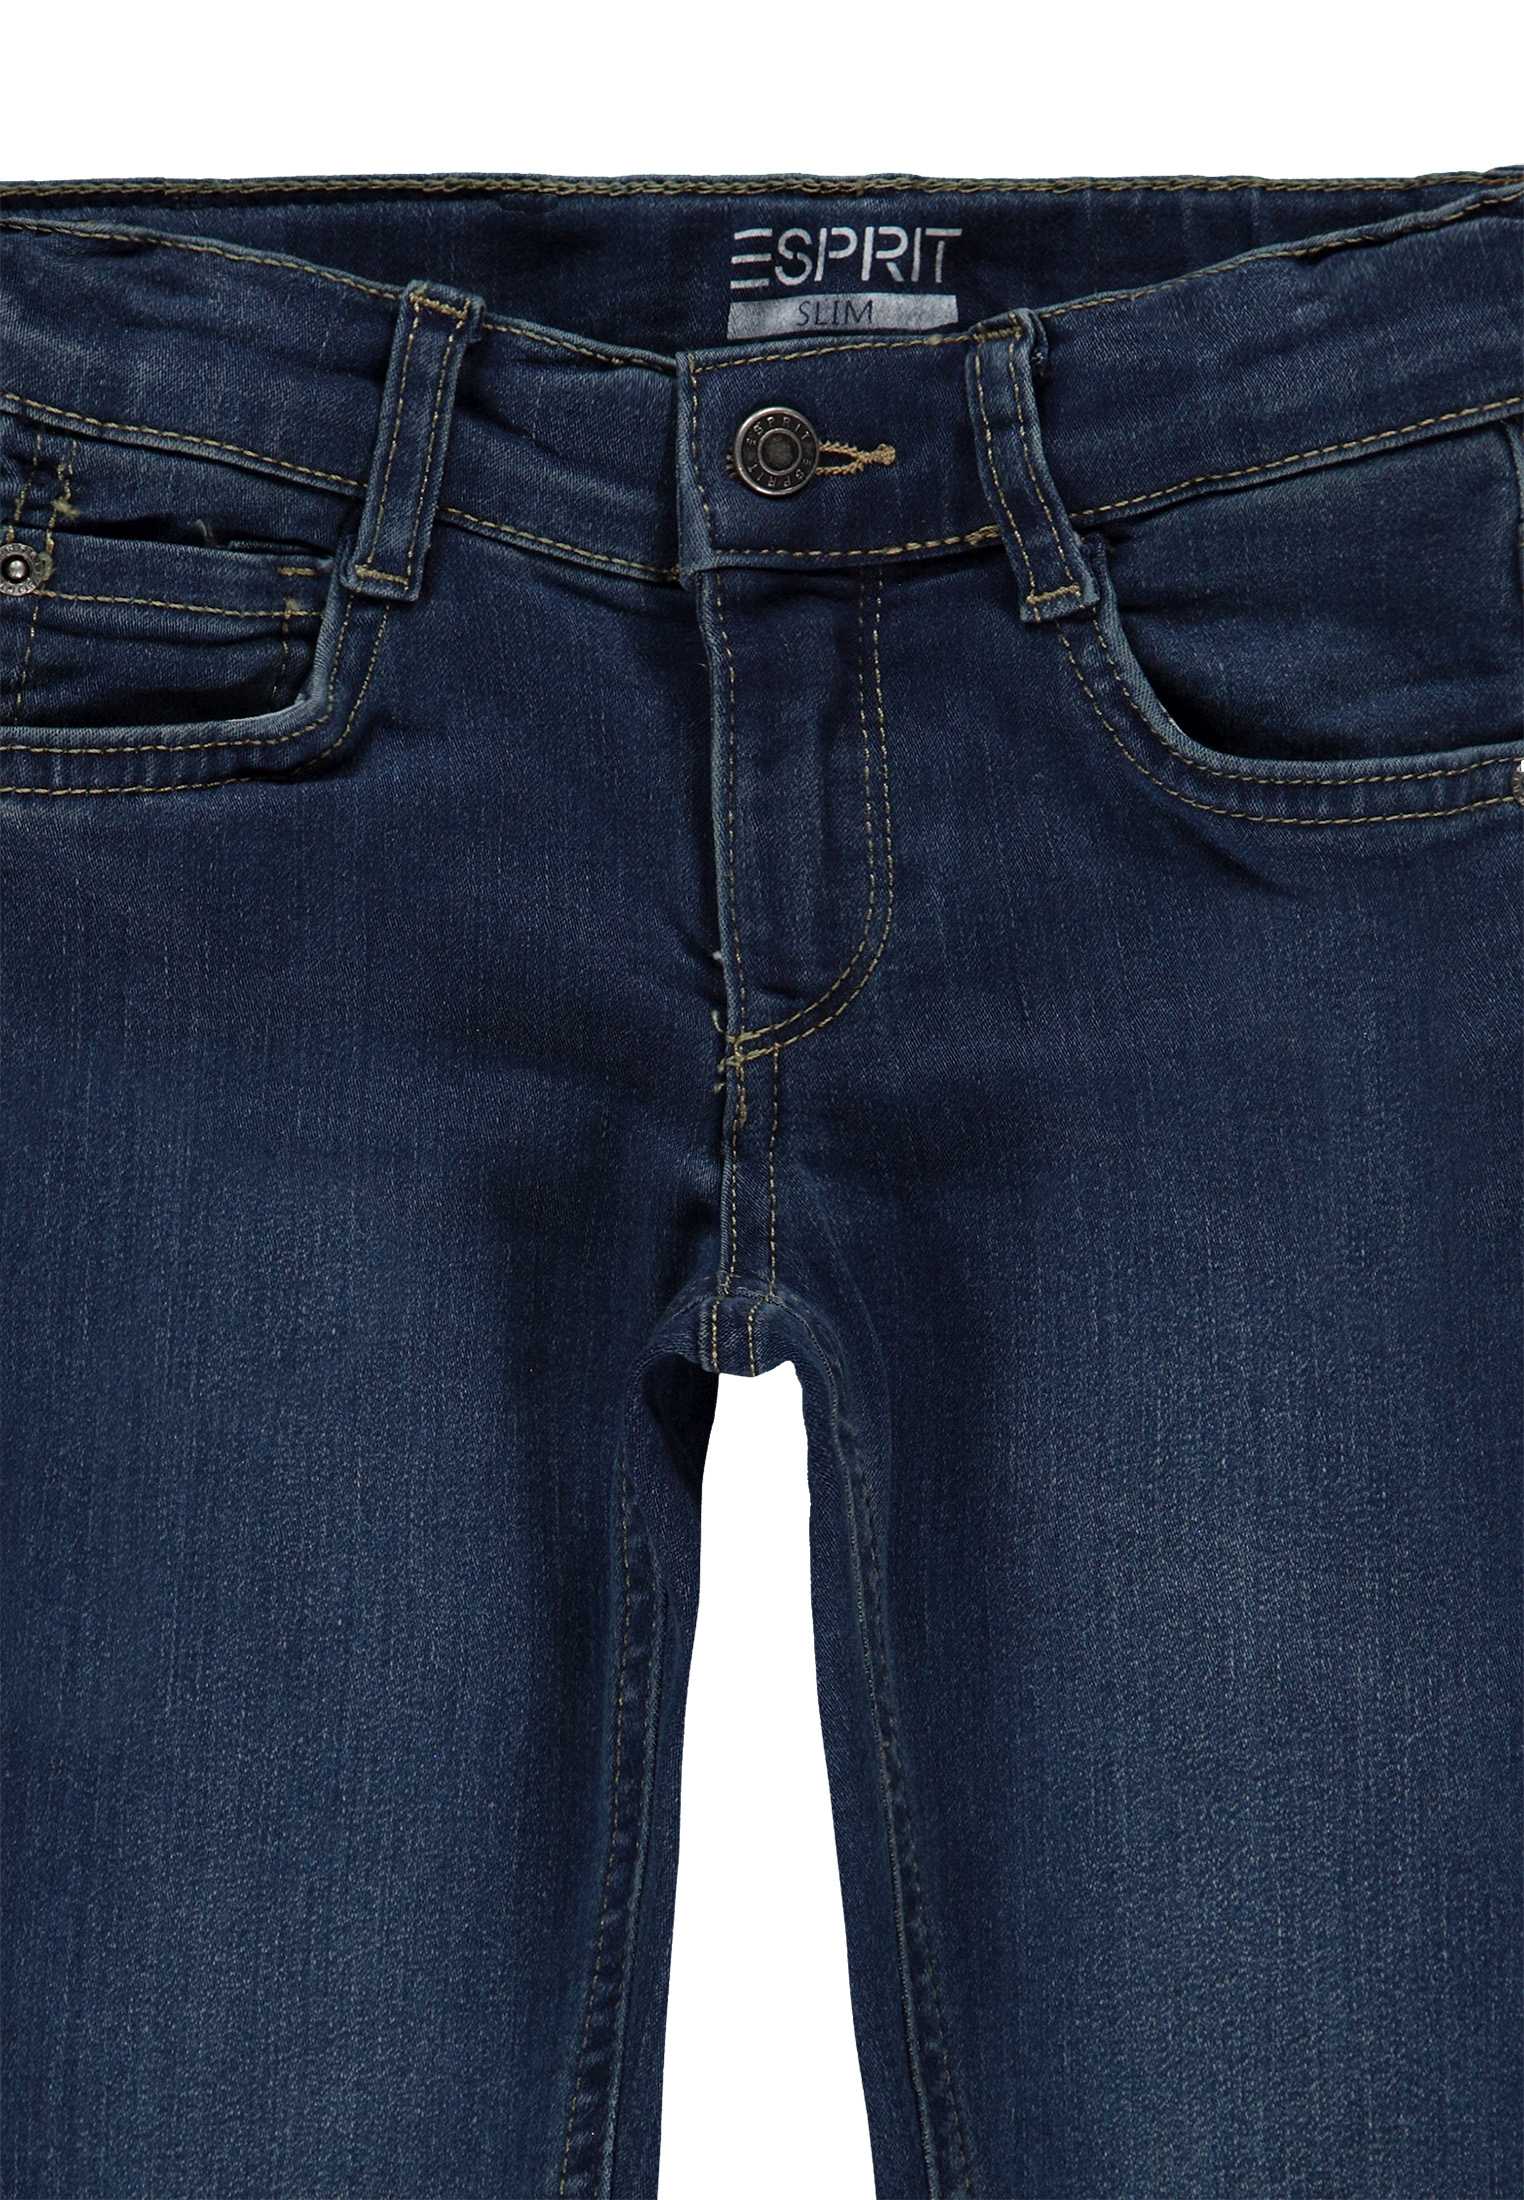 Chłopięce spodnie jeansowe, Wide Fit, niebieskie, Esprit